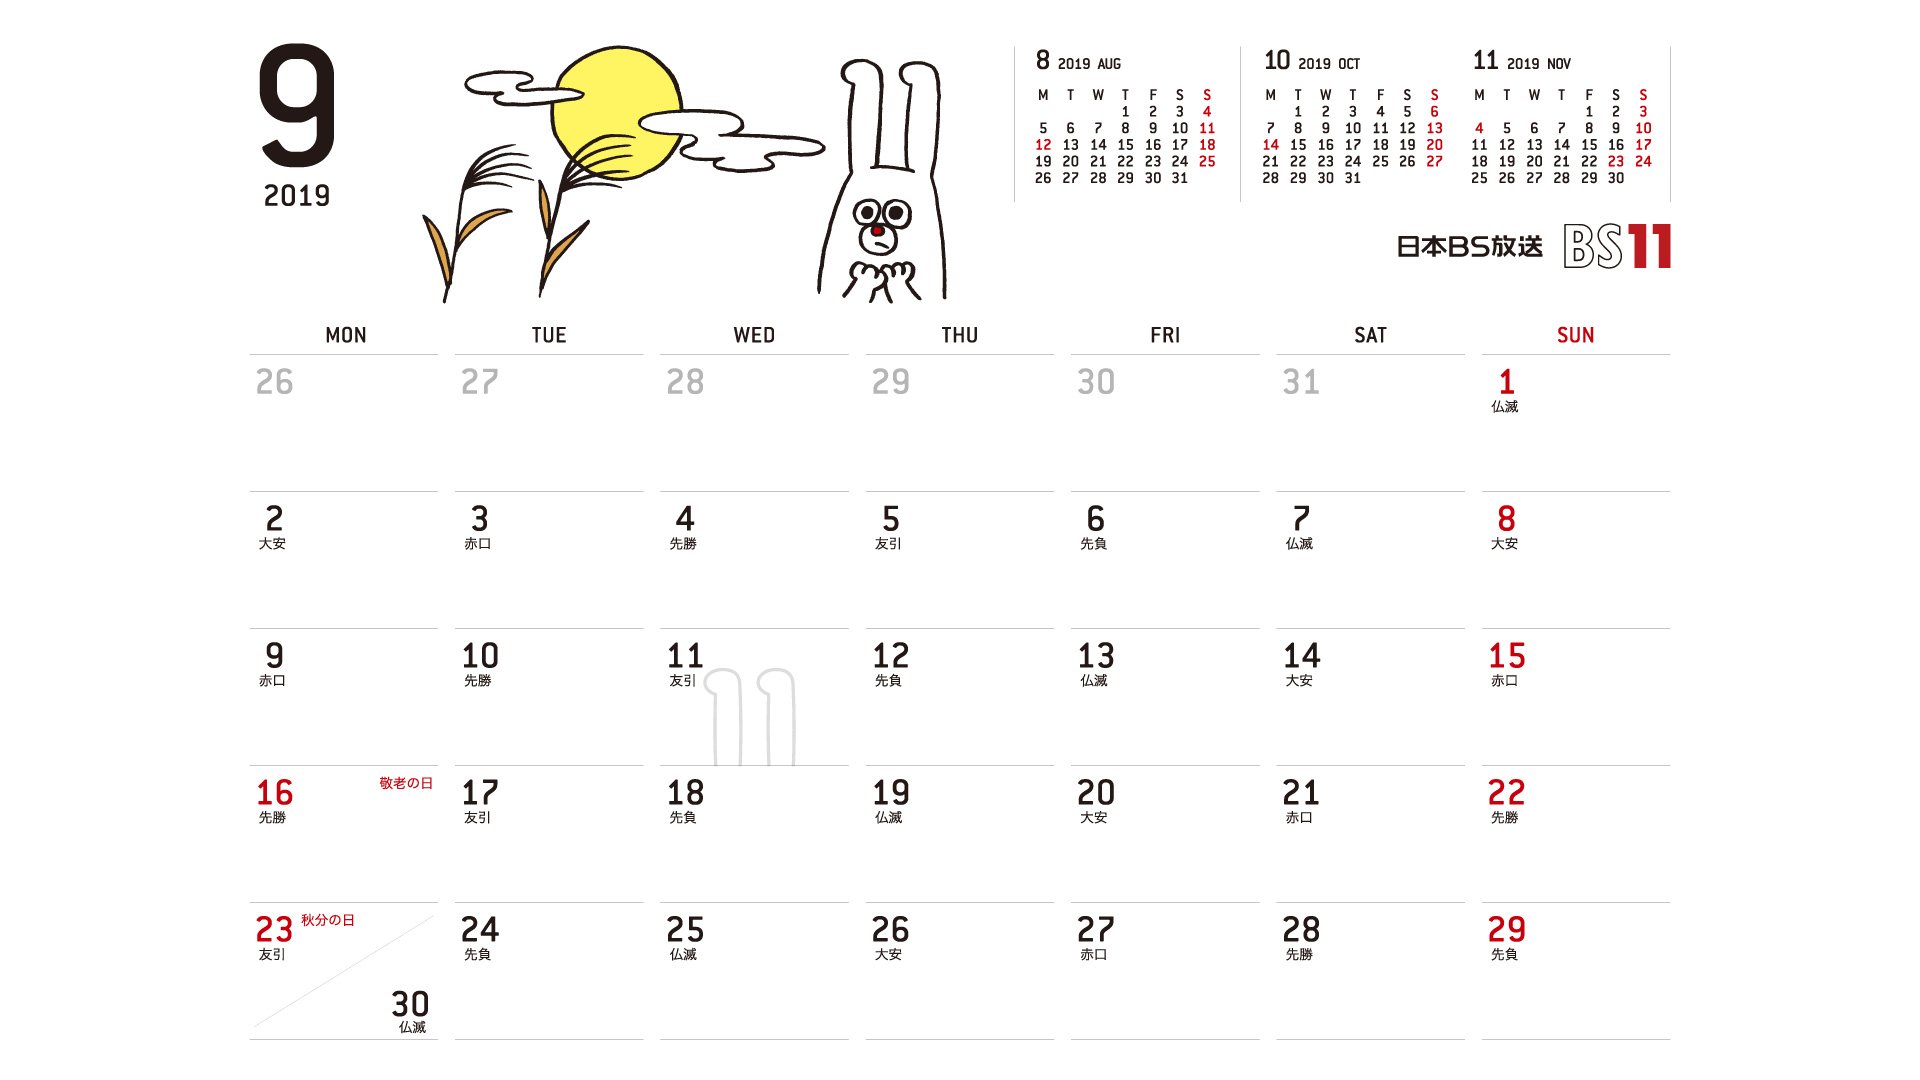 じゅういっちゃんのデジタルカレンダー2019年09月 Bs11 イレブン